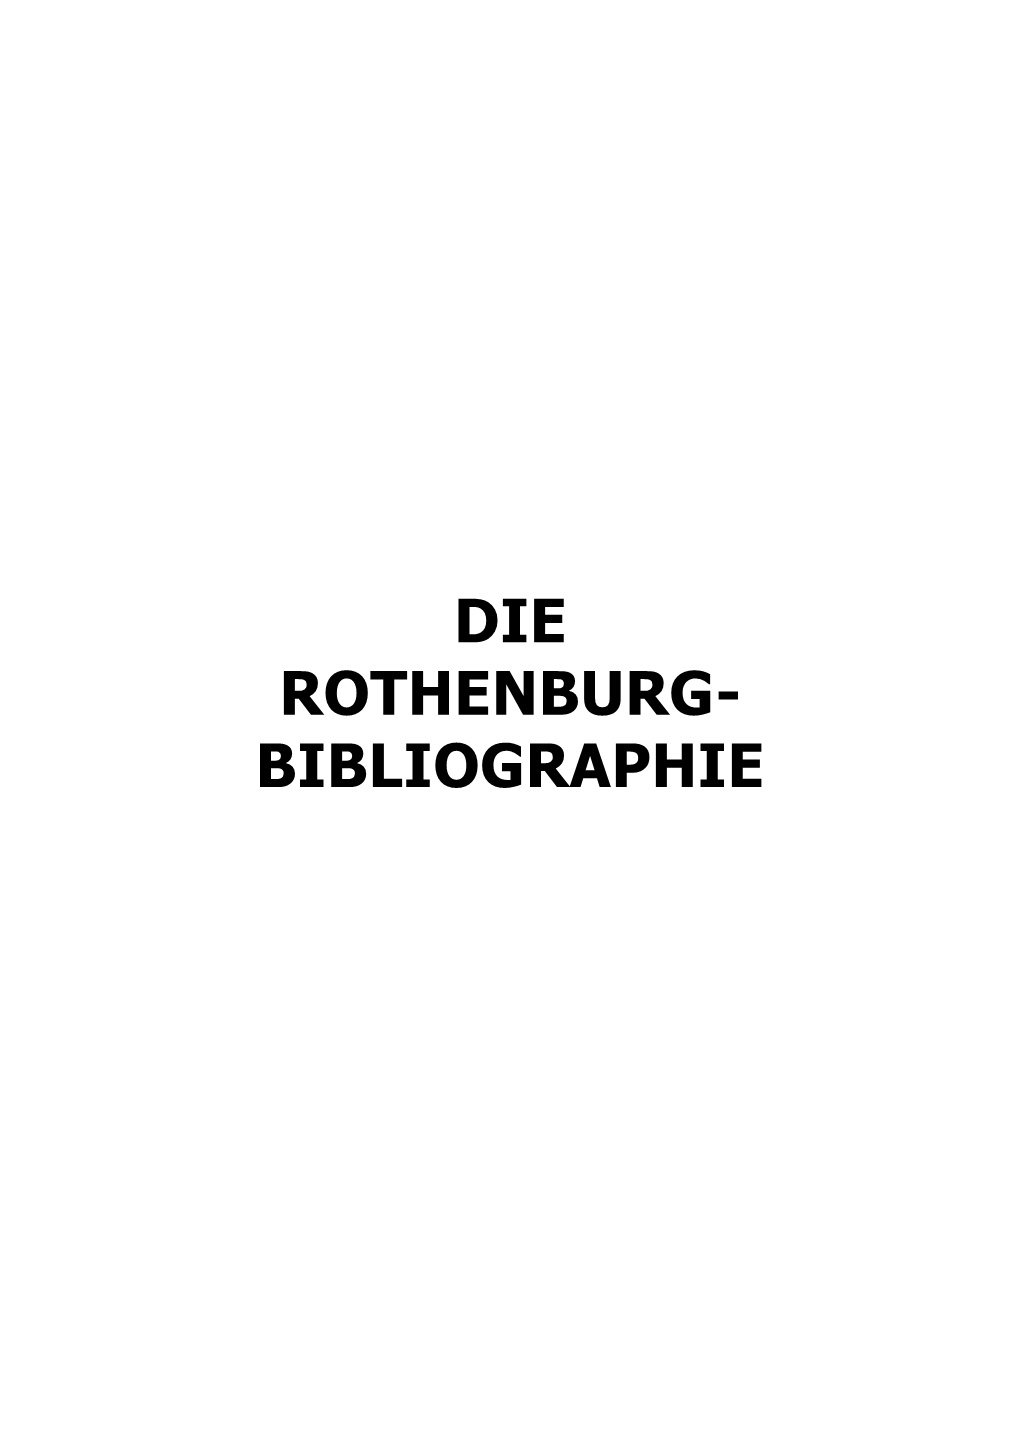 Die Rothenburg-Bibliographie